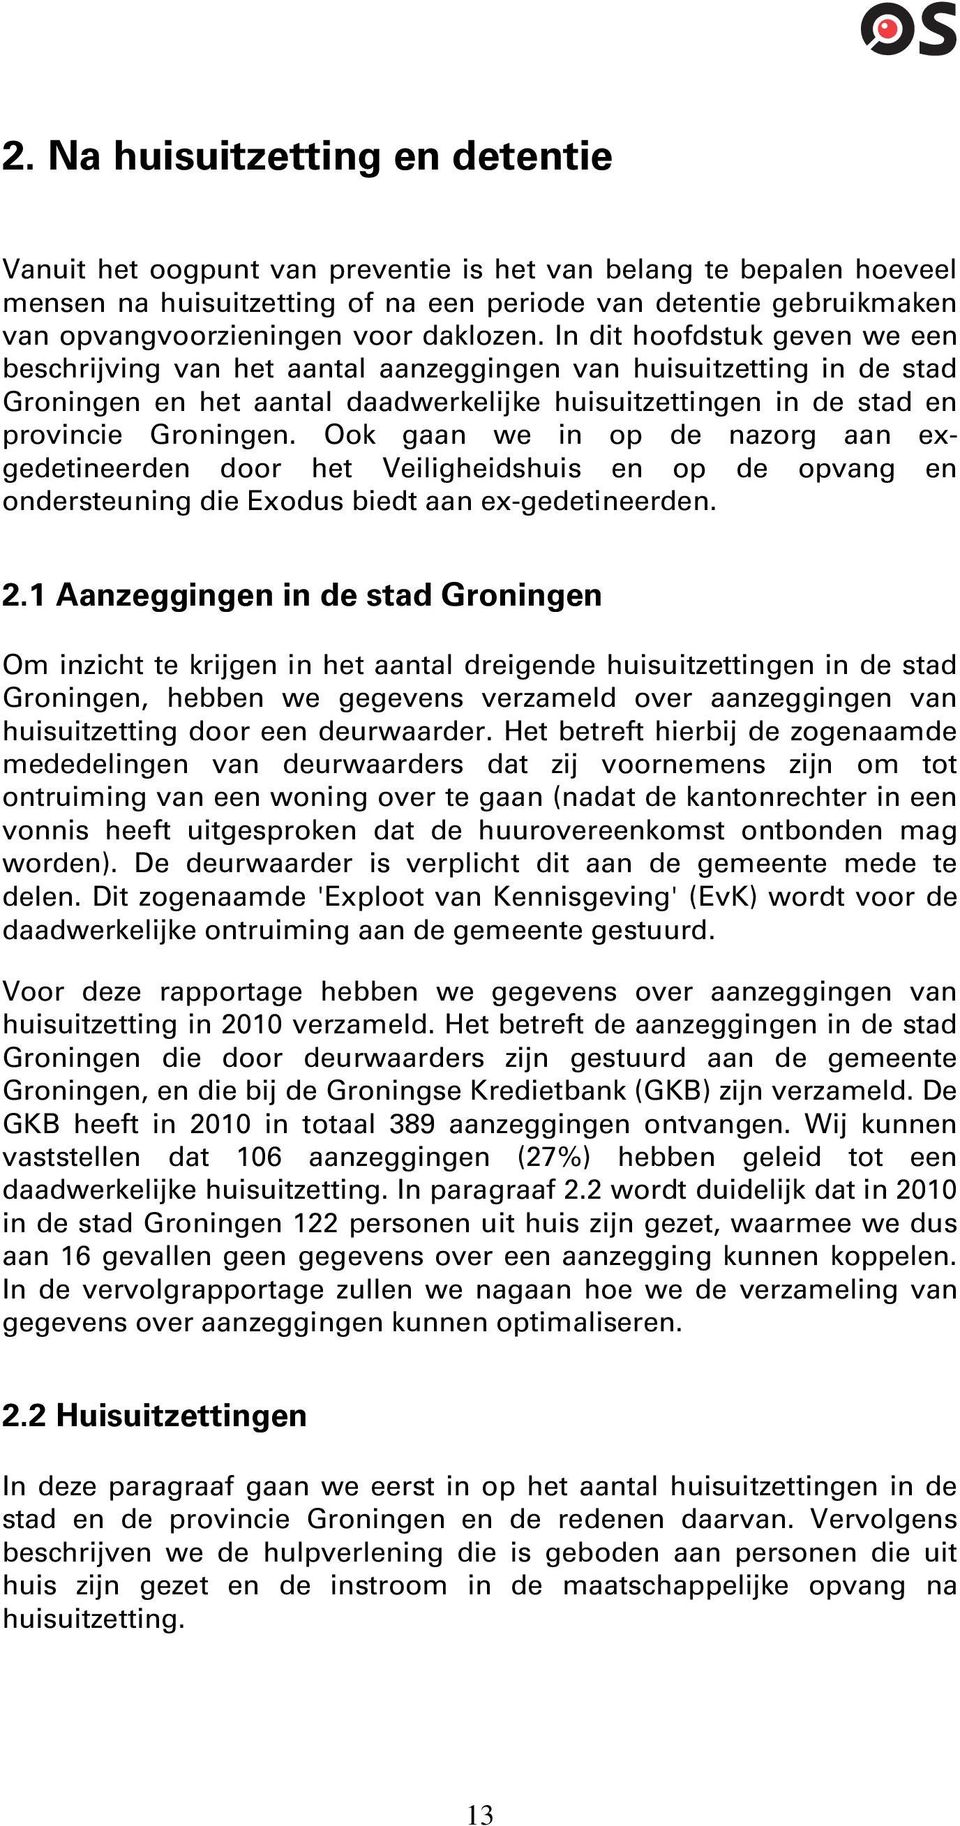 In dit hoofdstuk geven we een beschrijving van het aantal aanzeggingen van huisuitzetting in de stad Groningen en het aantal daadwerkelijke huisuitzettingen in de stad en provincie Groningen.